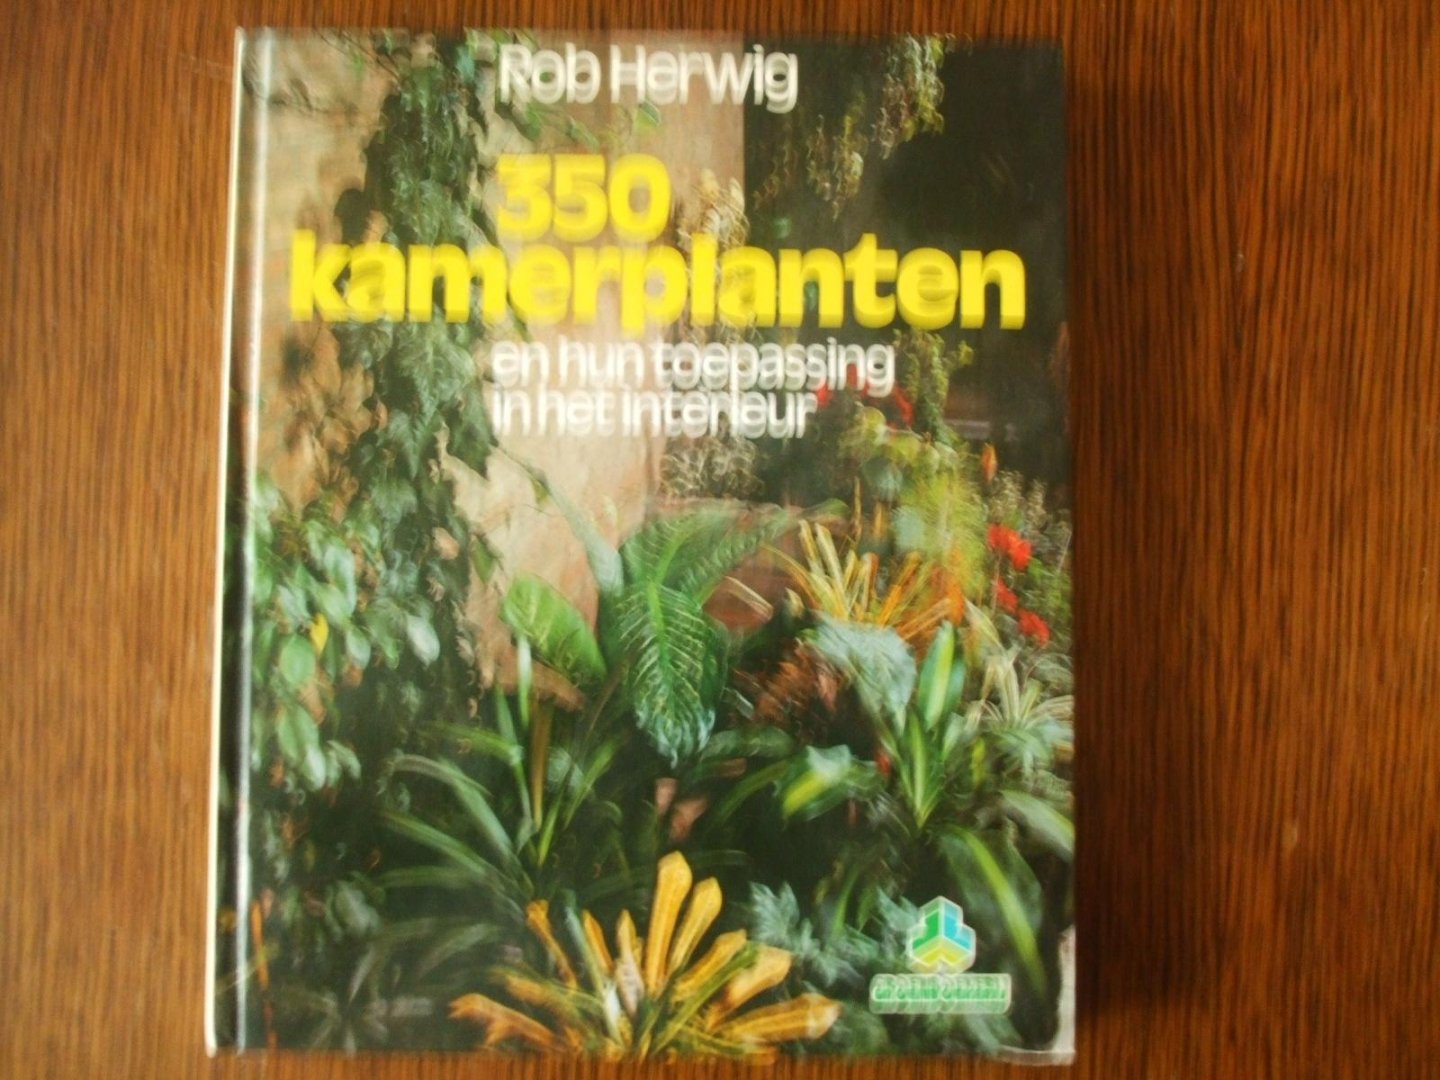 Herwig, R. - 350 kamerplanten en hun toepassingen / druk 14